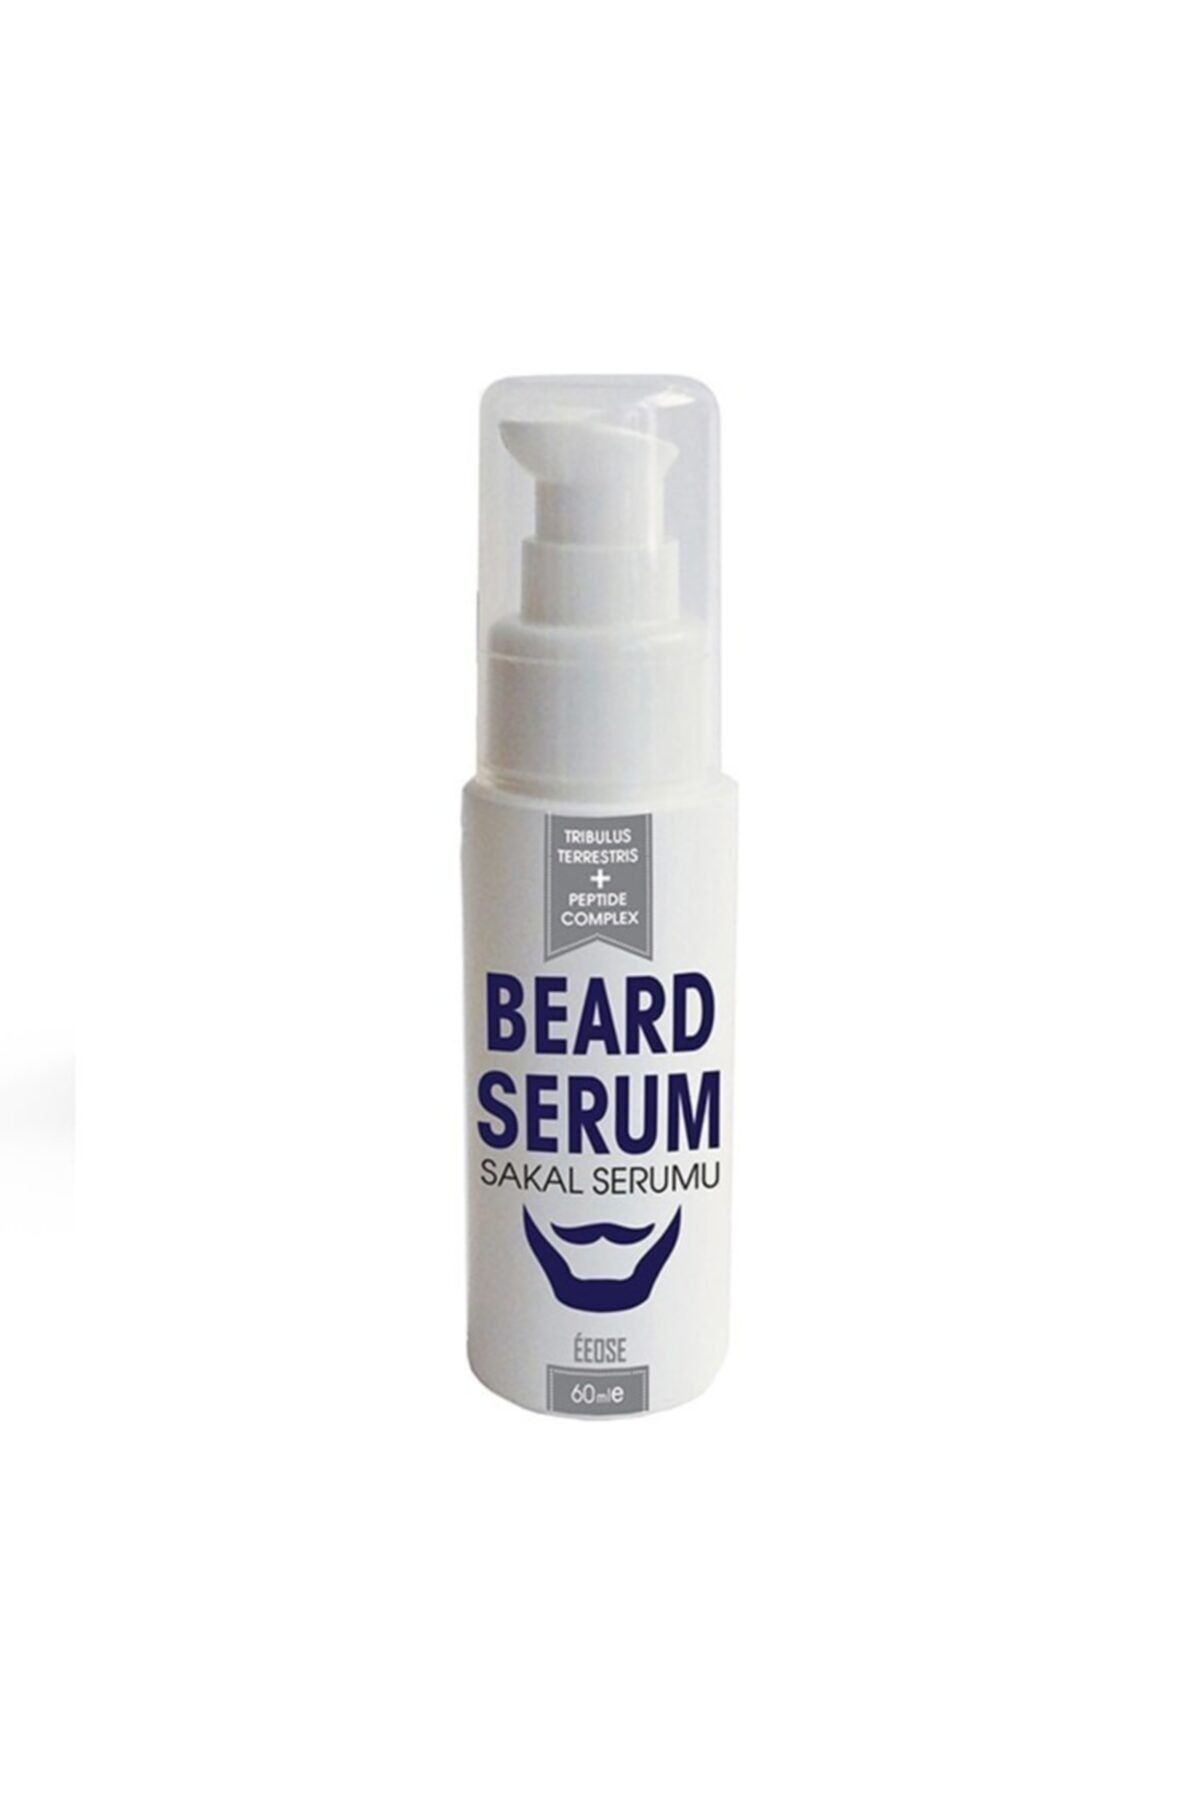 Eeose Beard Serum Sakal Serumu 60 ml